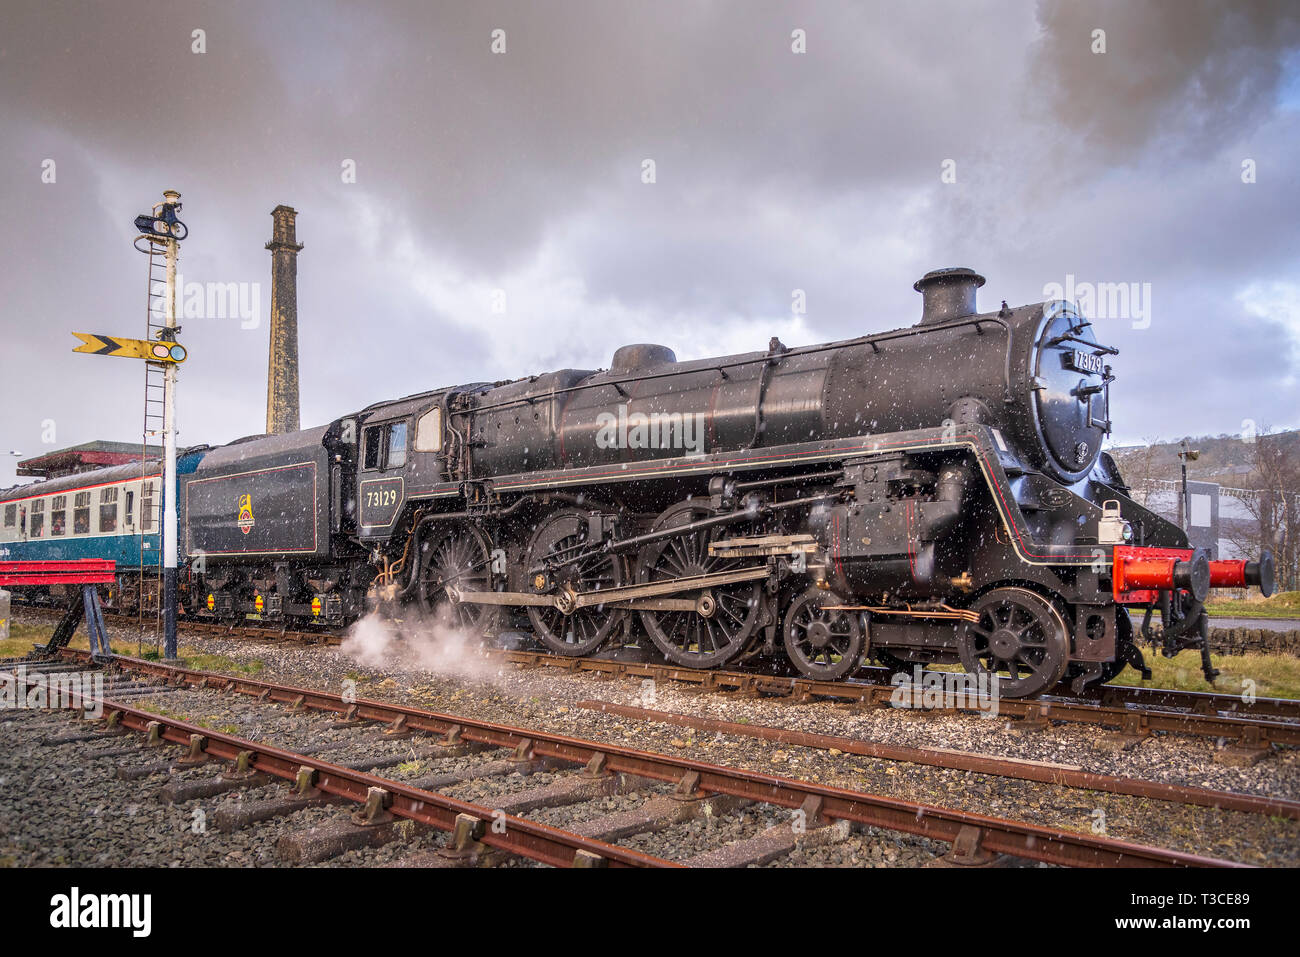 East Lancs gala à vapeur Mar 2015. British Railways Standard Class 5 n°73129 préservé est une locomotive à vapeur britannique. Il est le seul survivant Banque D'Images